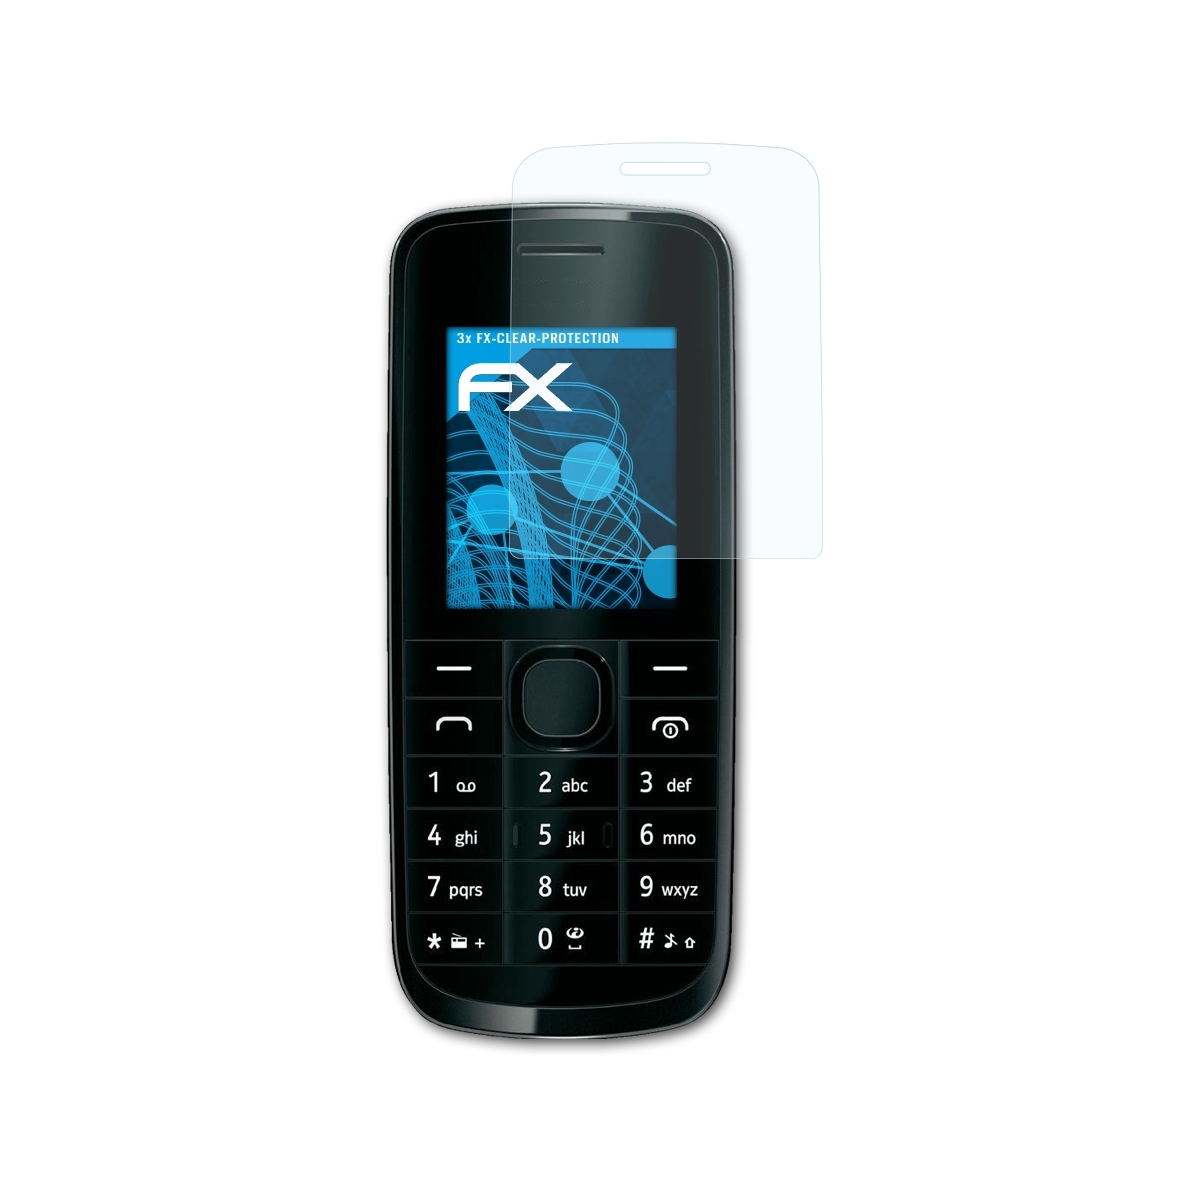 ATFOLIX 3x FX-Clear 113) Nokia Displayschutz(für